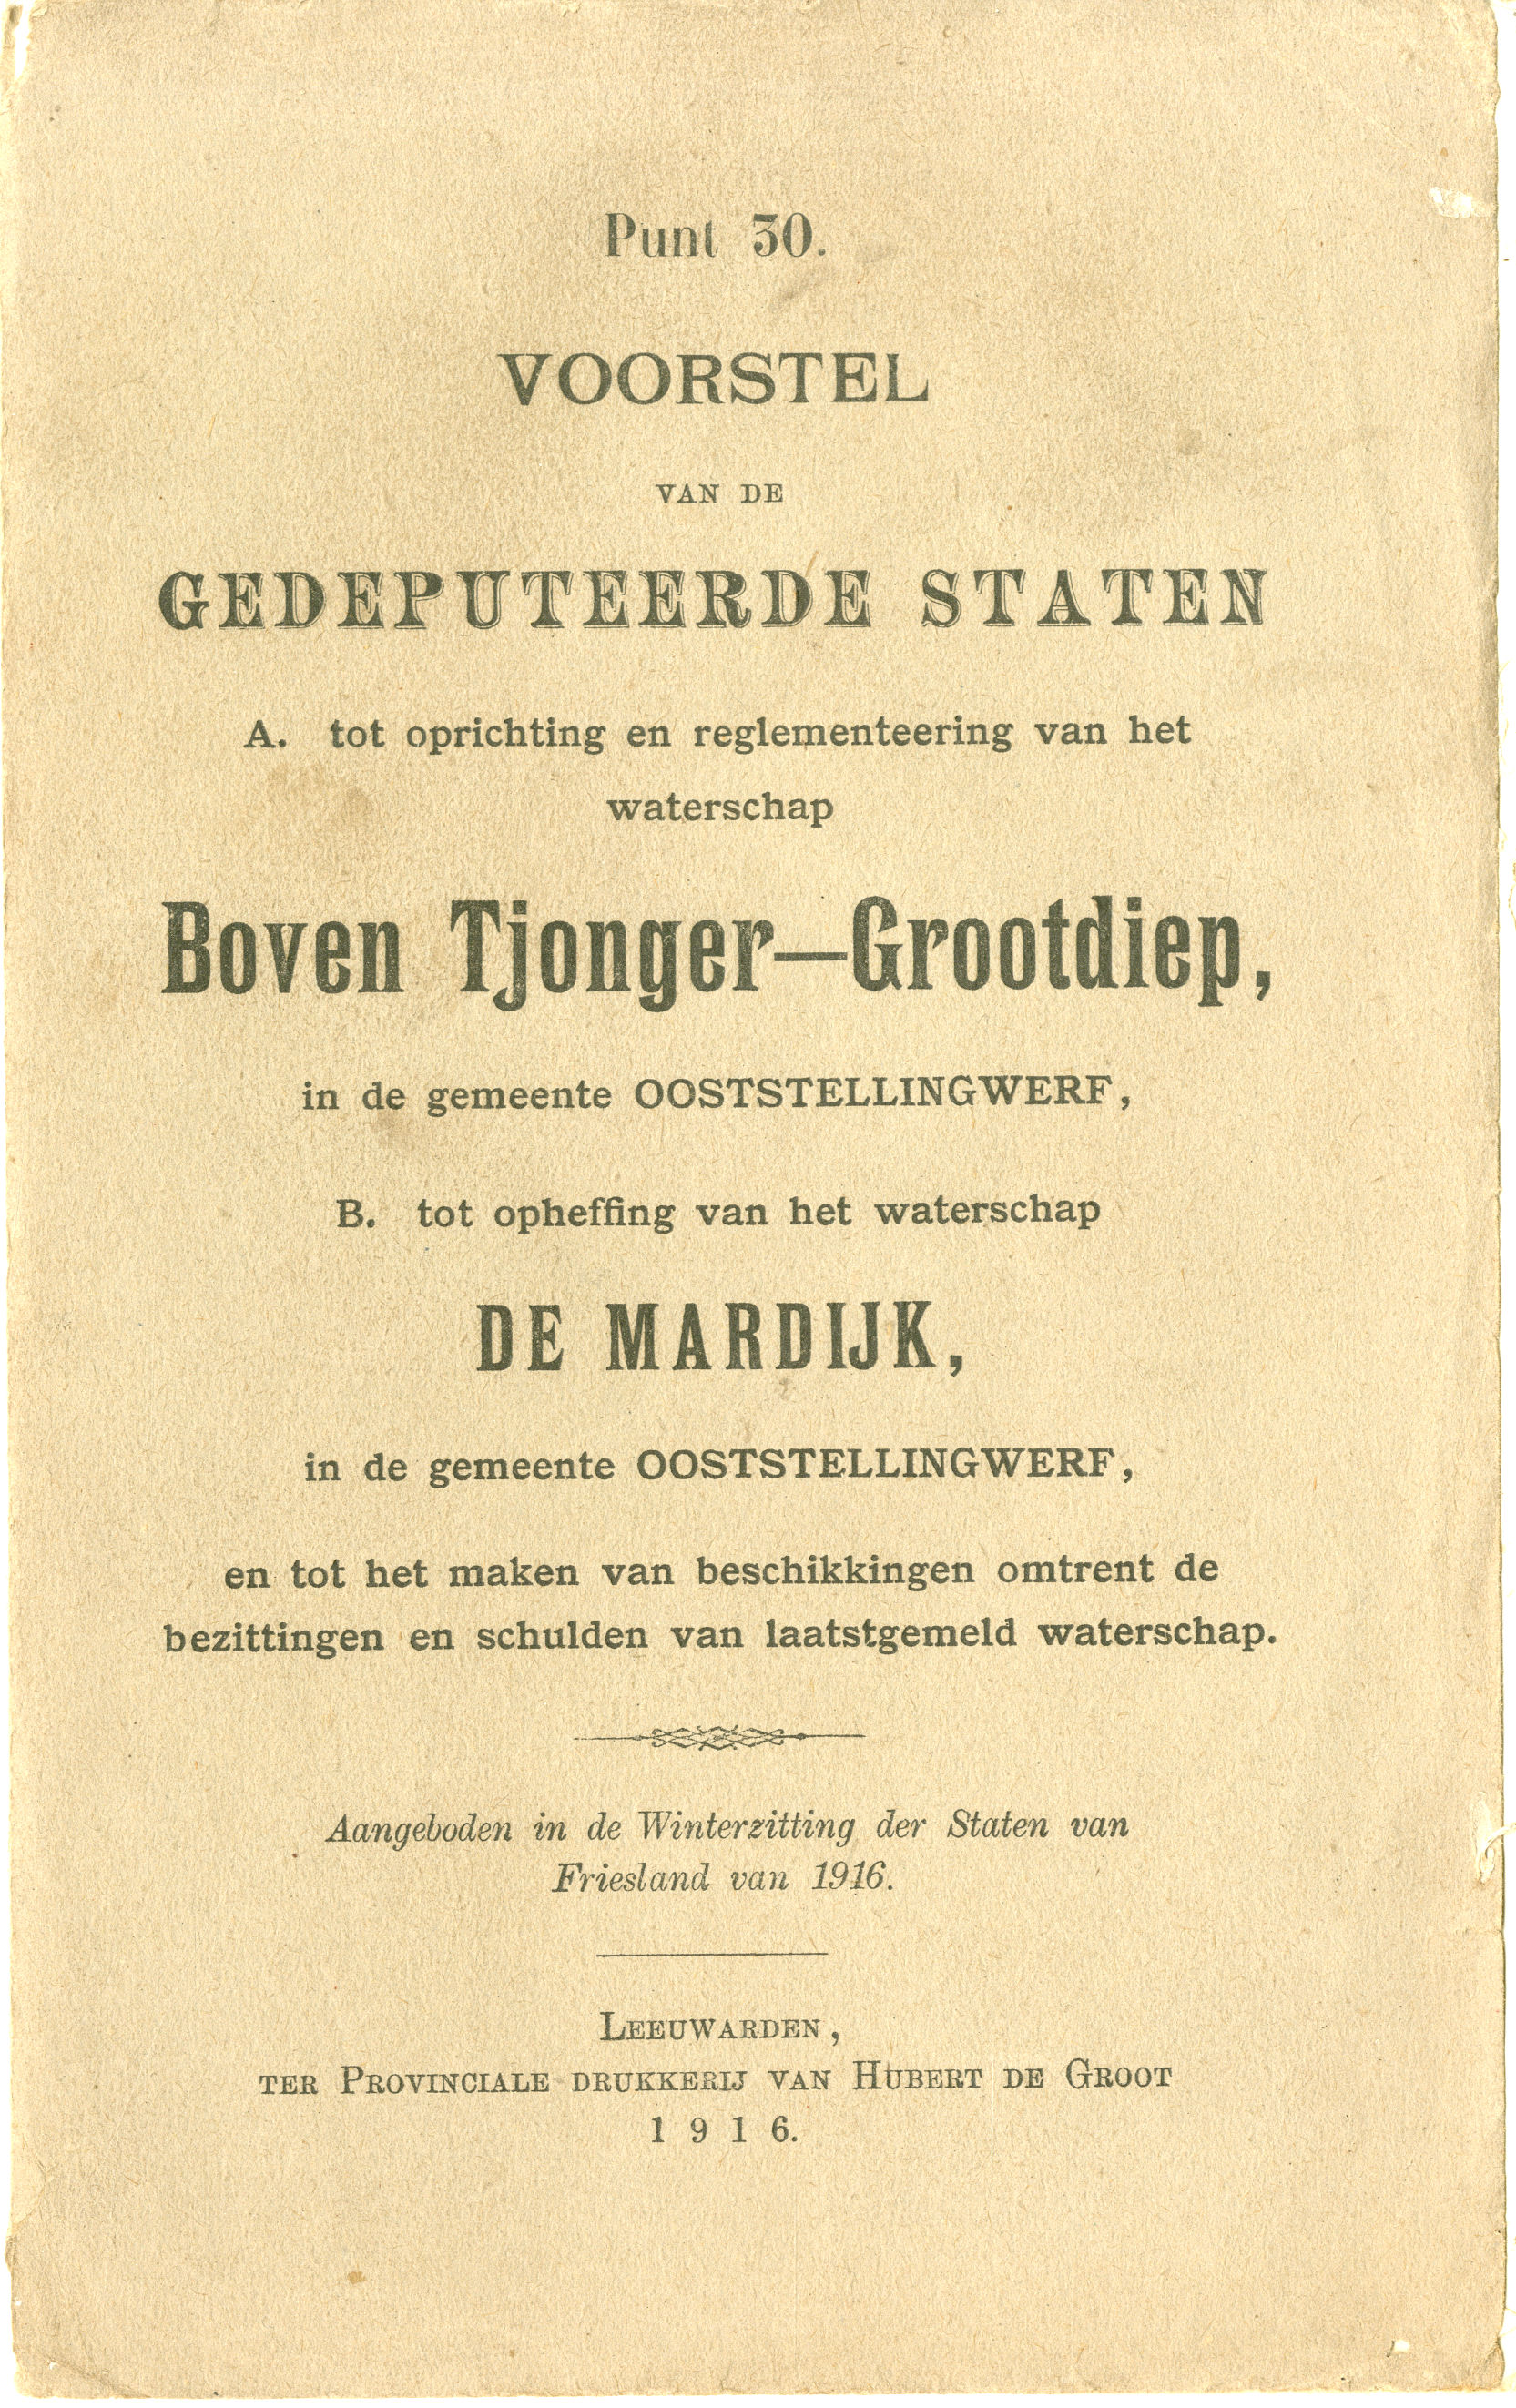 22-03-1916 Boven Tjonger-Gootdiep